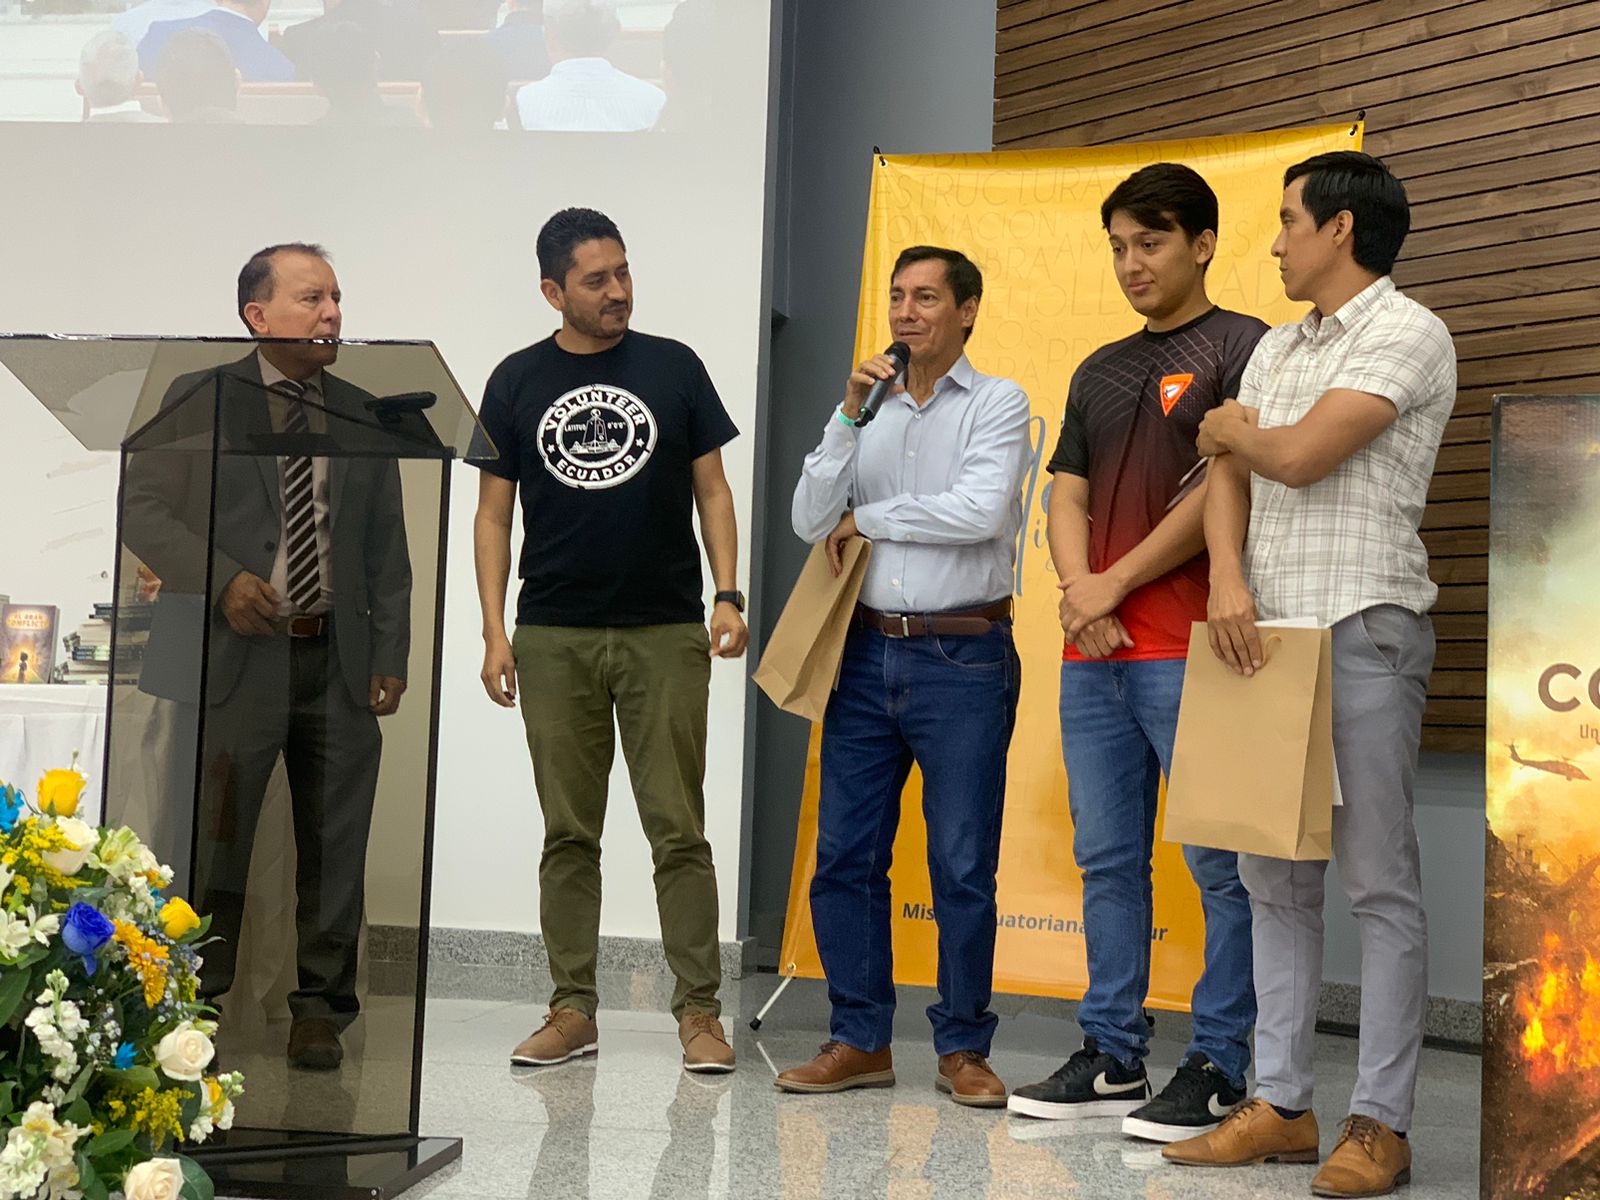 Servicio voluntario, una vocación en los jóvenes del Ecuador